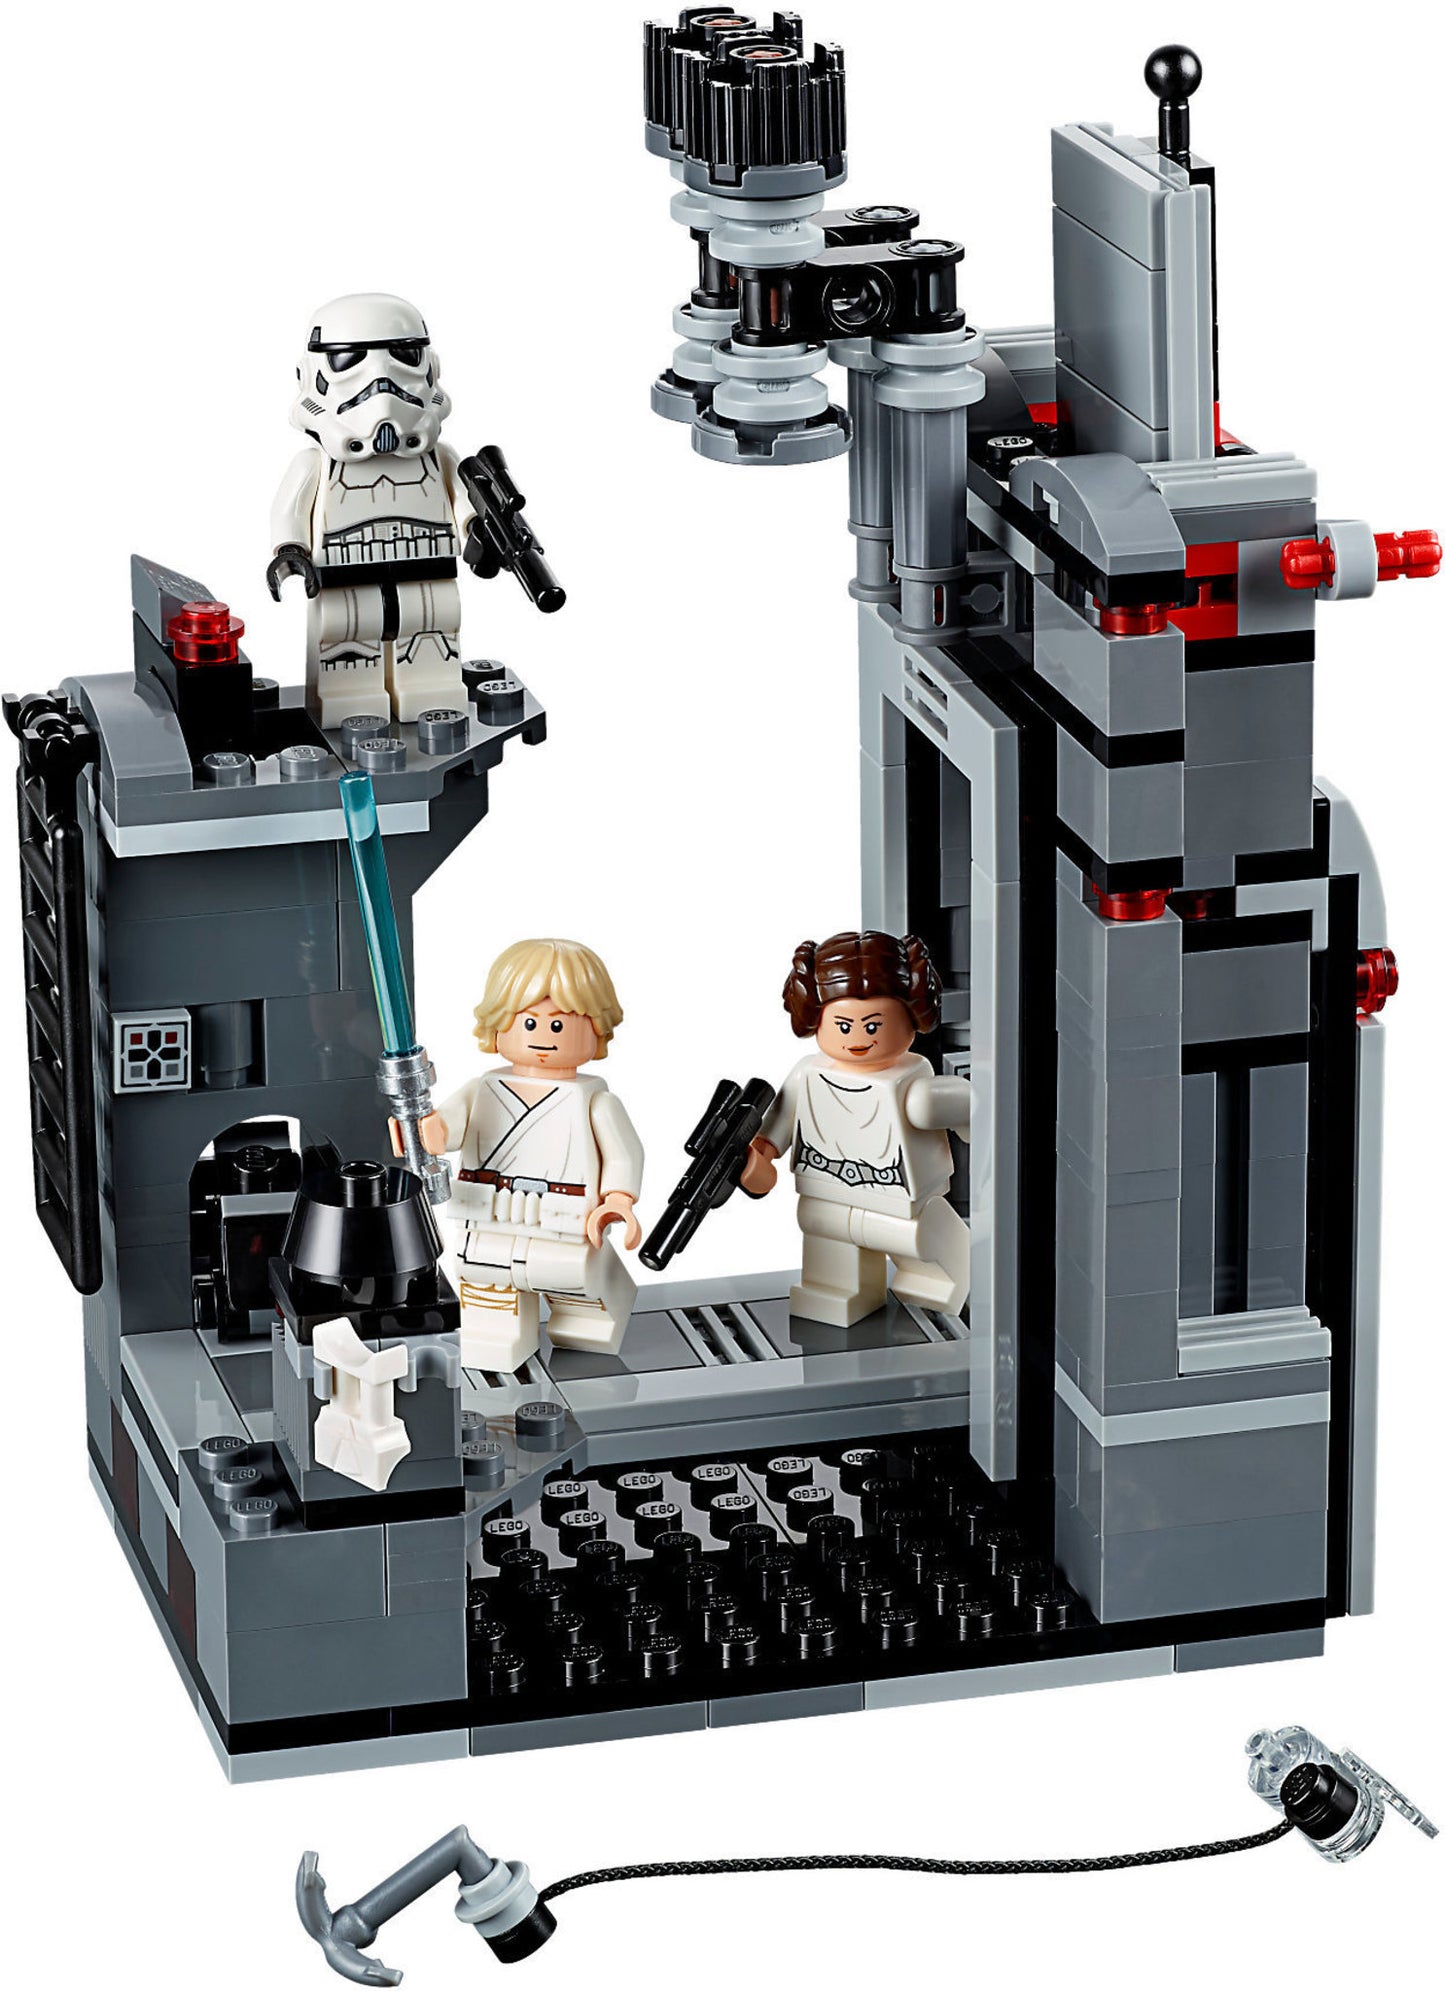 75229 LEGO Star Wars  - Fuga Dalla Death Star™